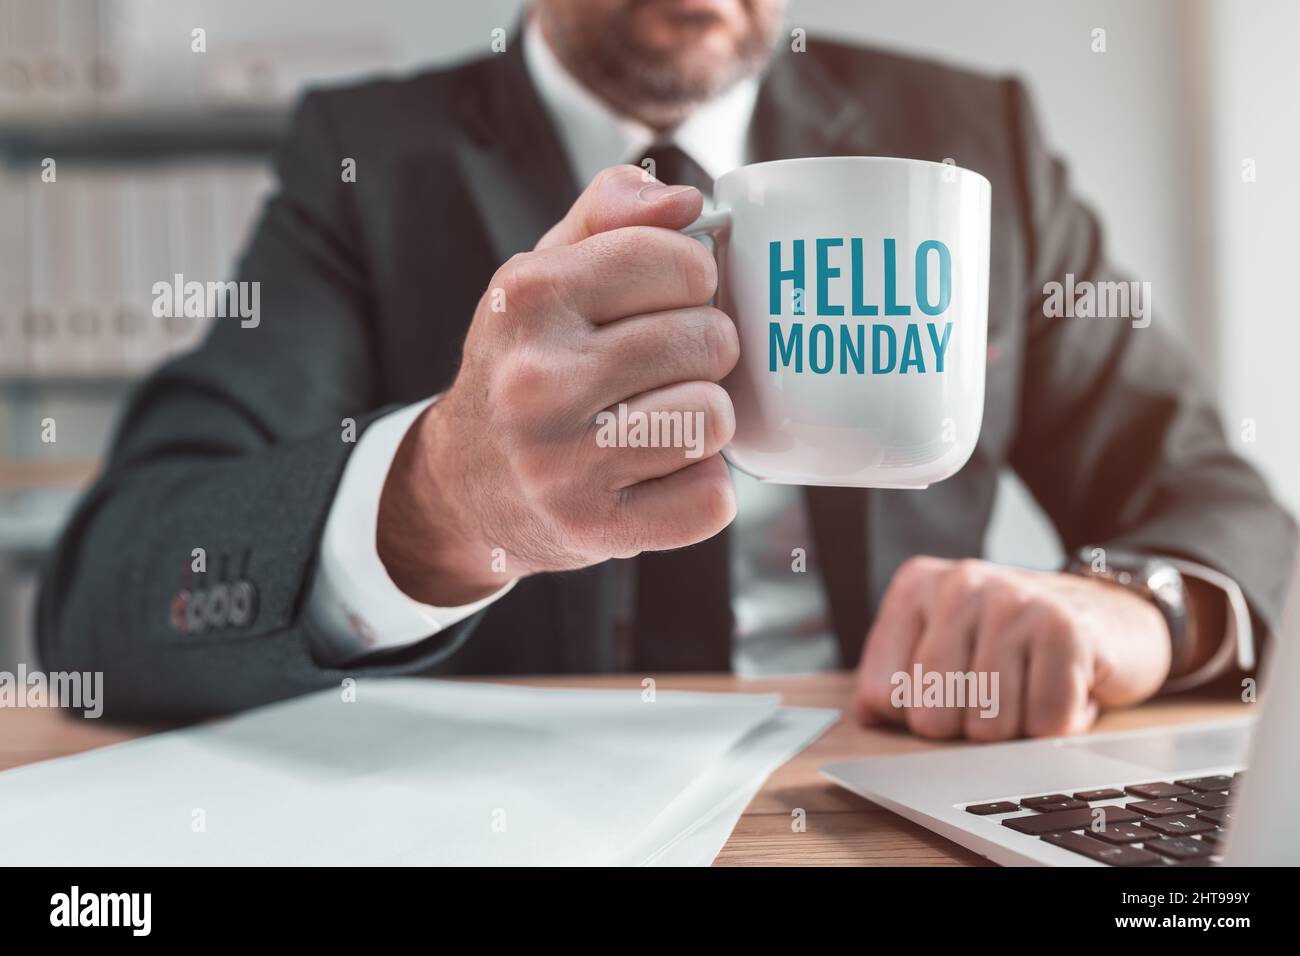 Bonjour lundi tasse de café entre les mains d'un professionnel pendant la pause-café de bureau, image conceptuelle avec une attention sélective Banque D'Images